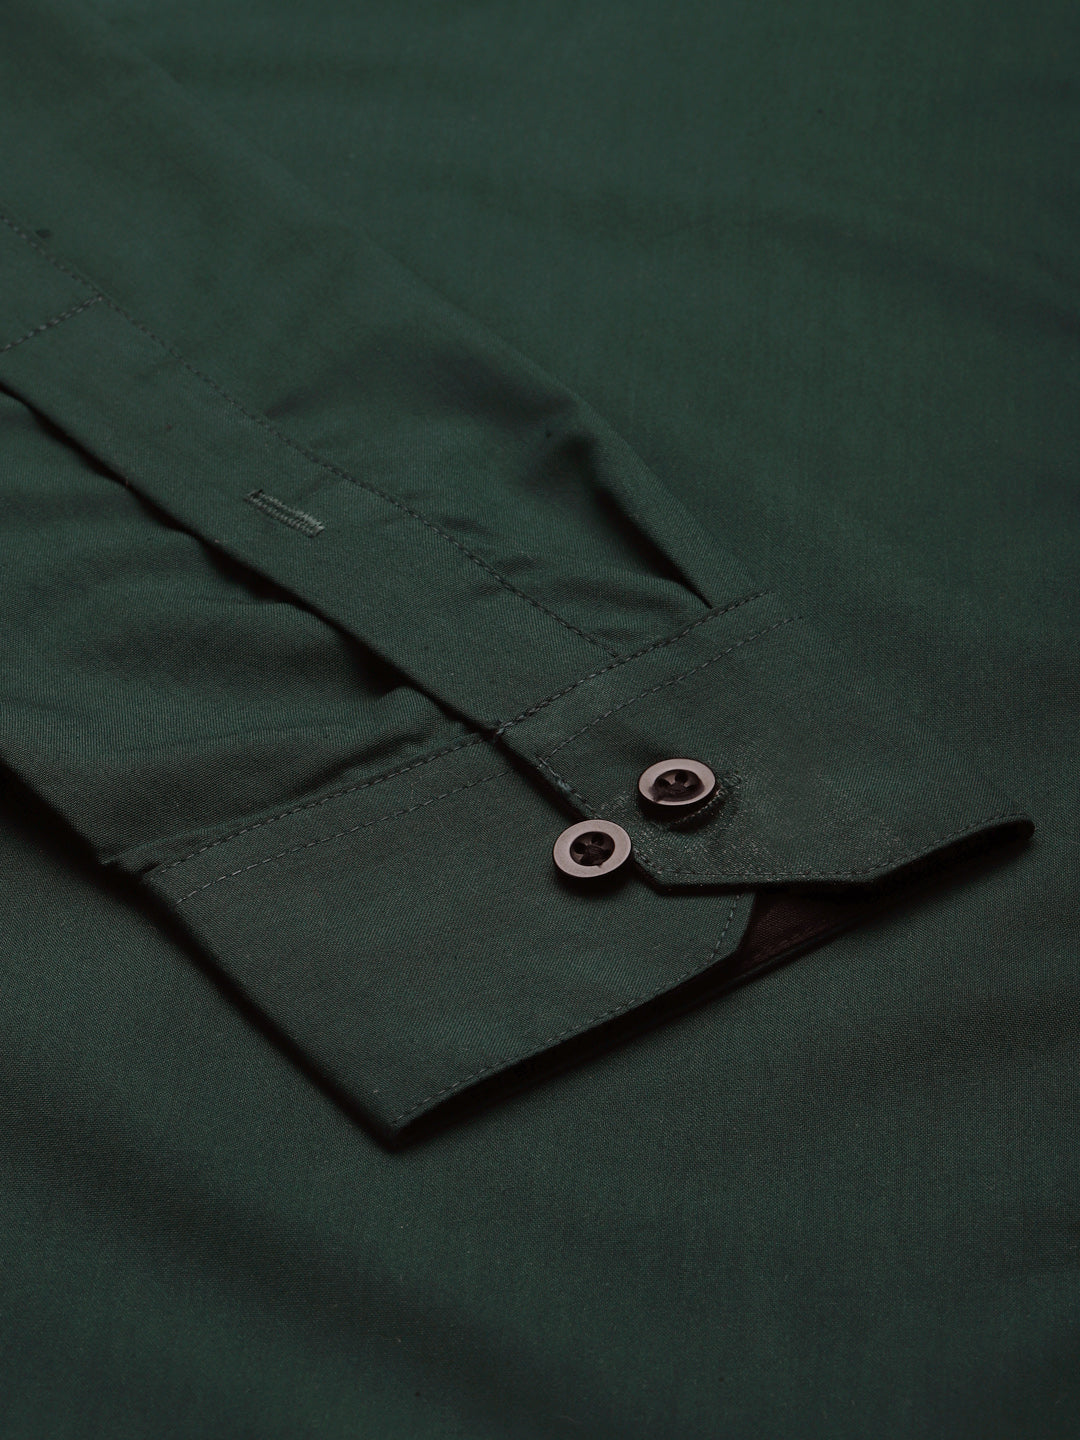 Men's Olive Green Formal Shirt with black detailing ( SF 411Olive ) - Jainish